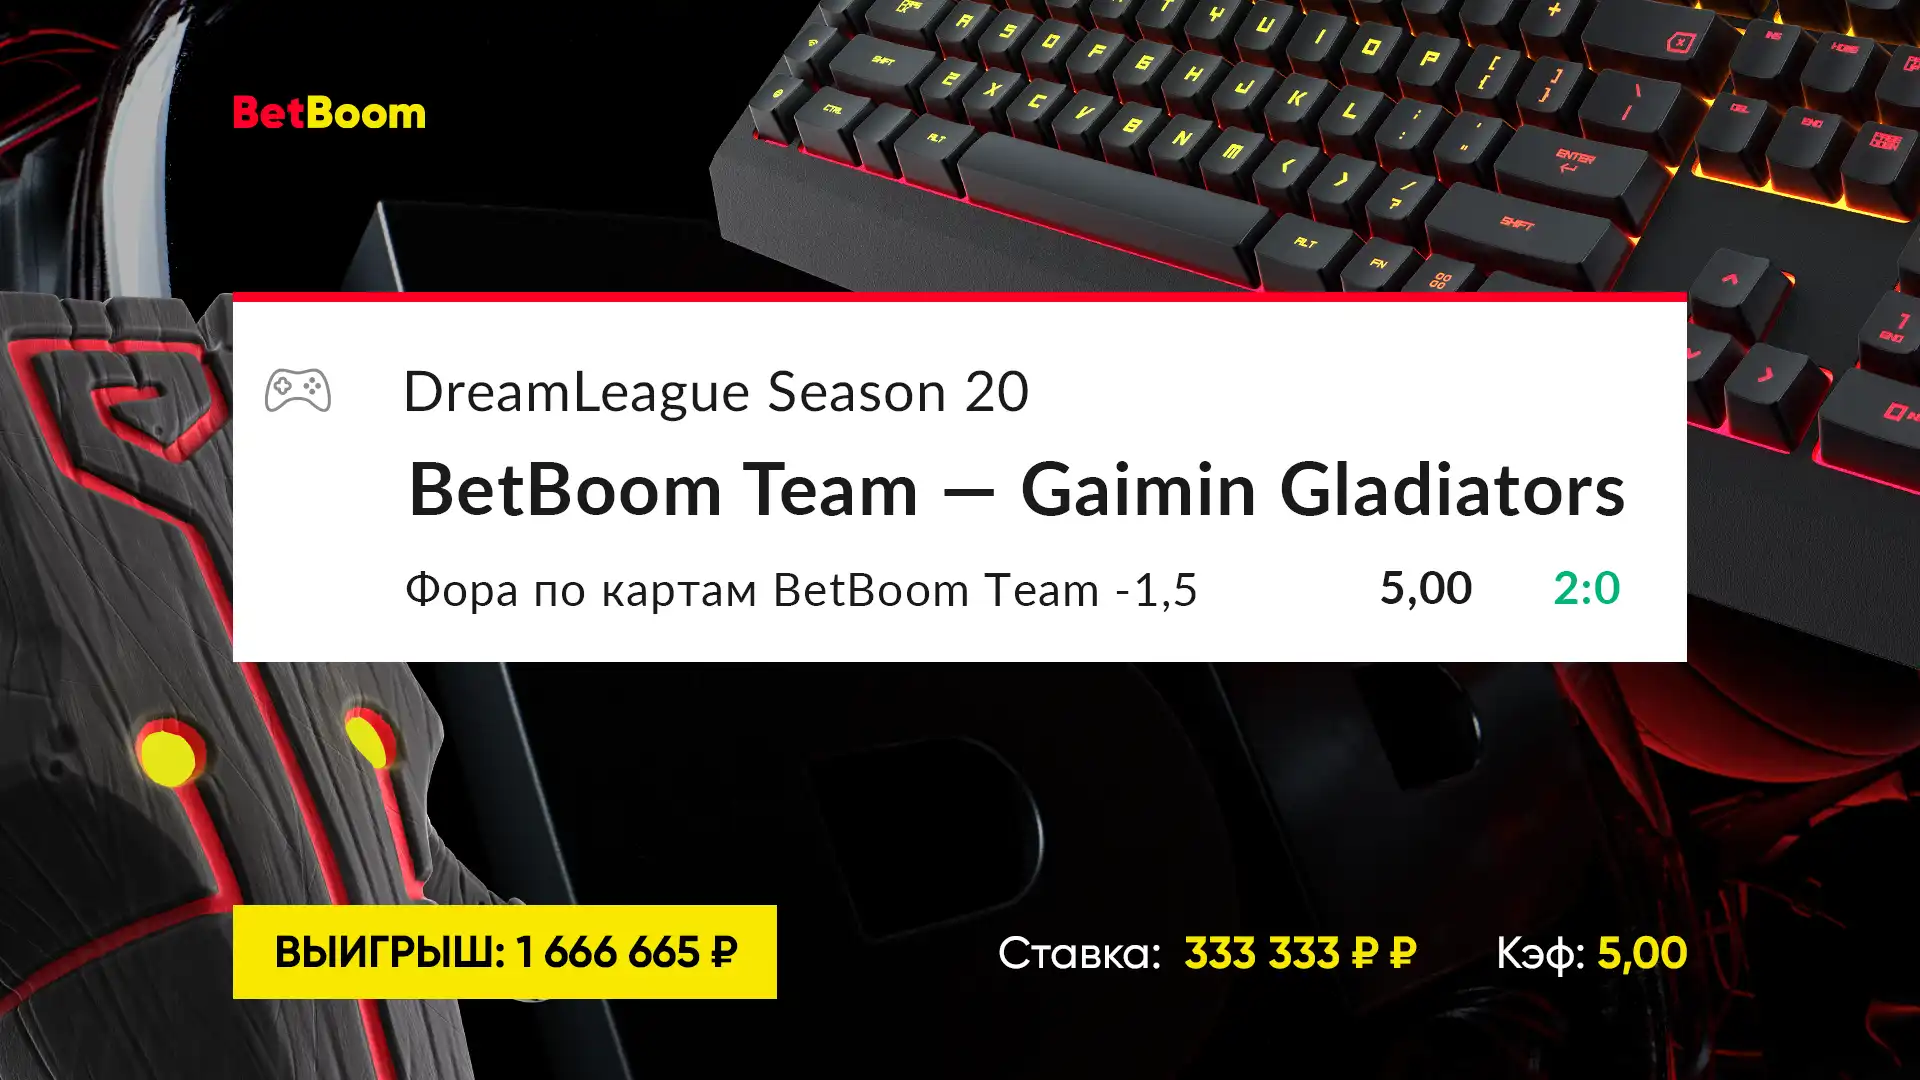 Шесть счастливых троек в ставке! Победа BetBoom Team над Gaimin Gladiators принесла клиенту BetBoom больше 1 600 000 рублей выигрыша